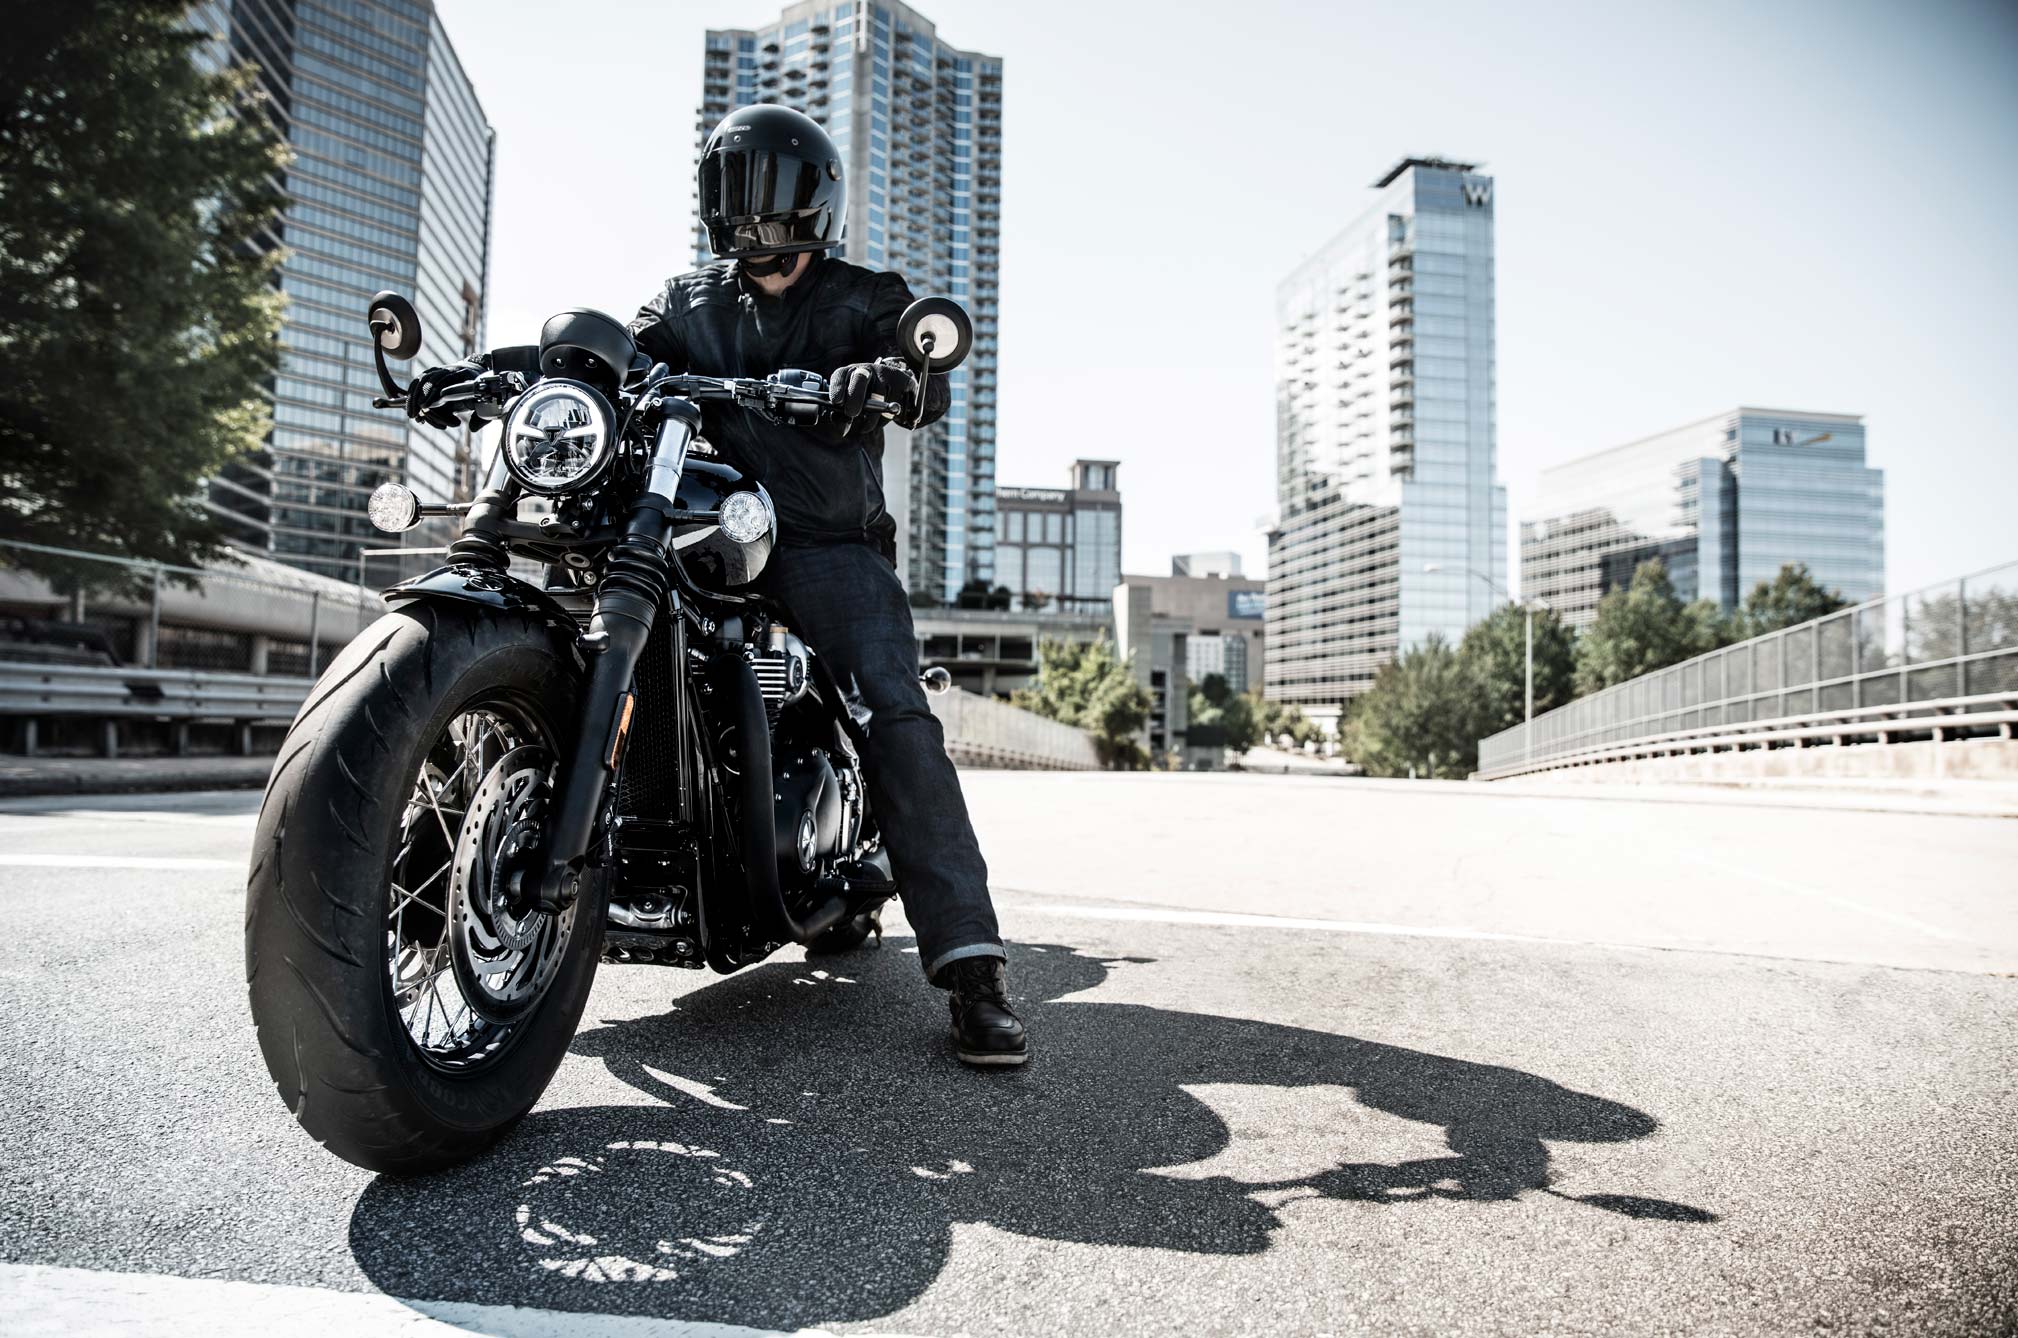 2019 Triumph Bonneville Bobber Black Review Total Motorcycle